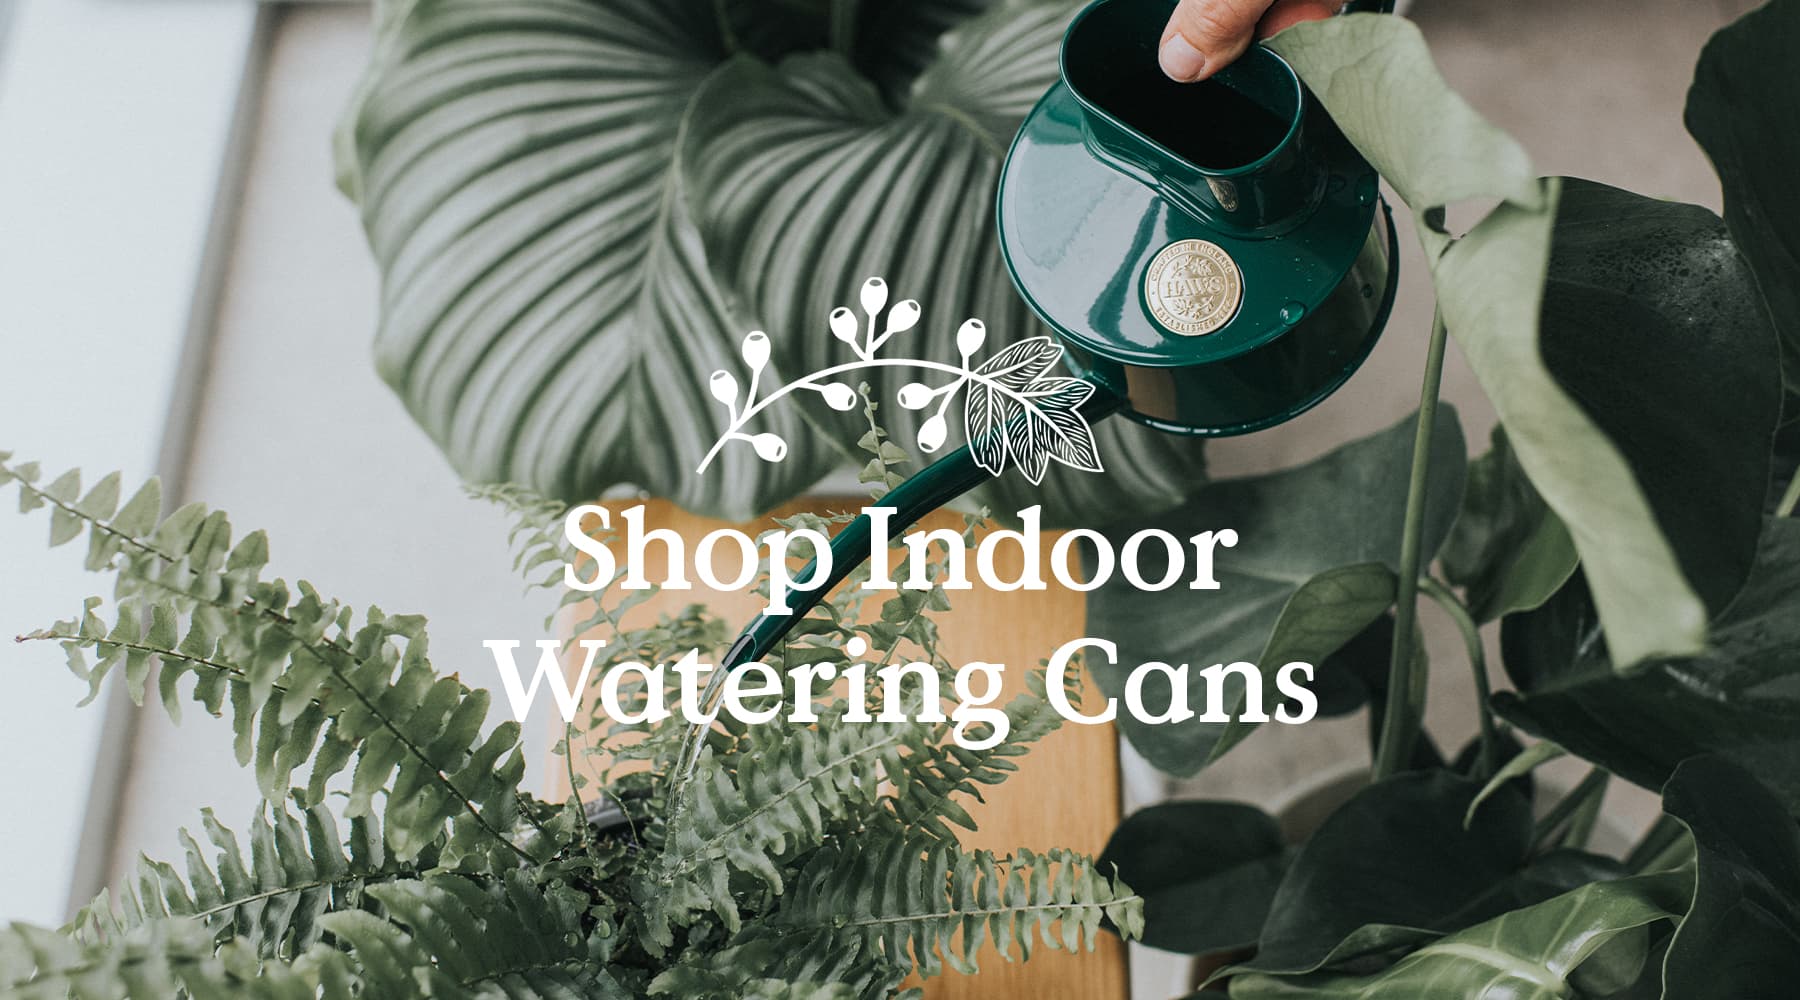 Indoor watering cans